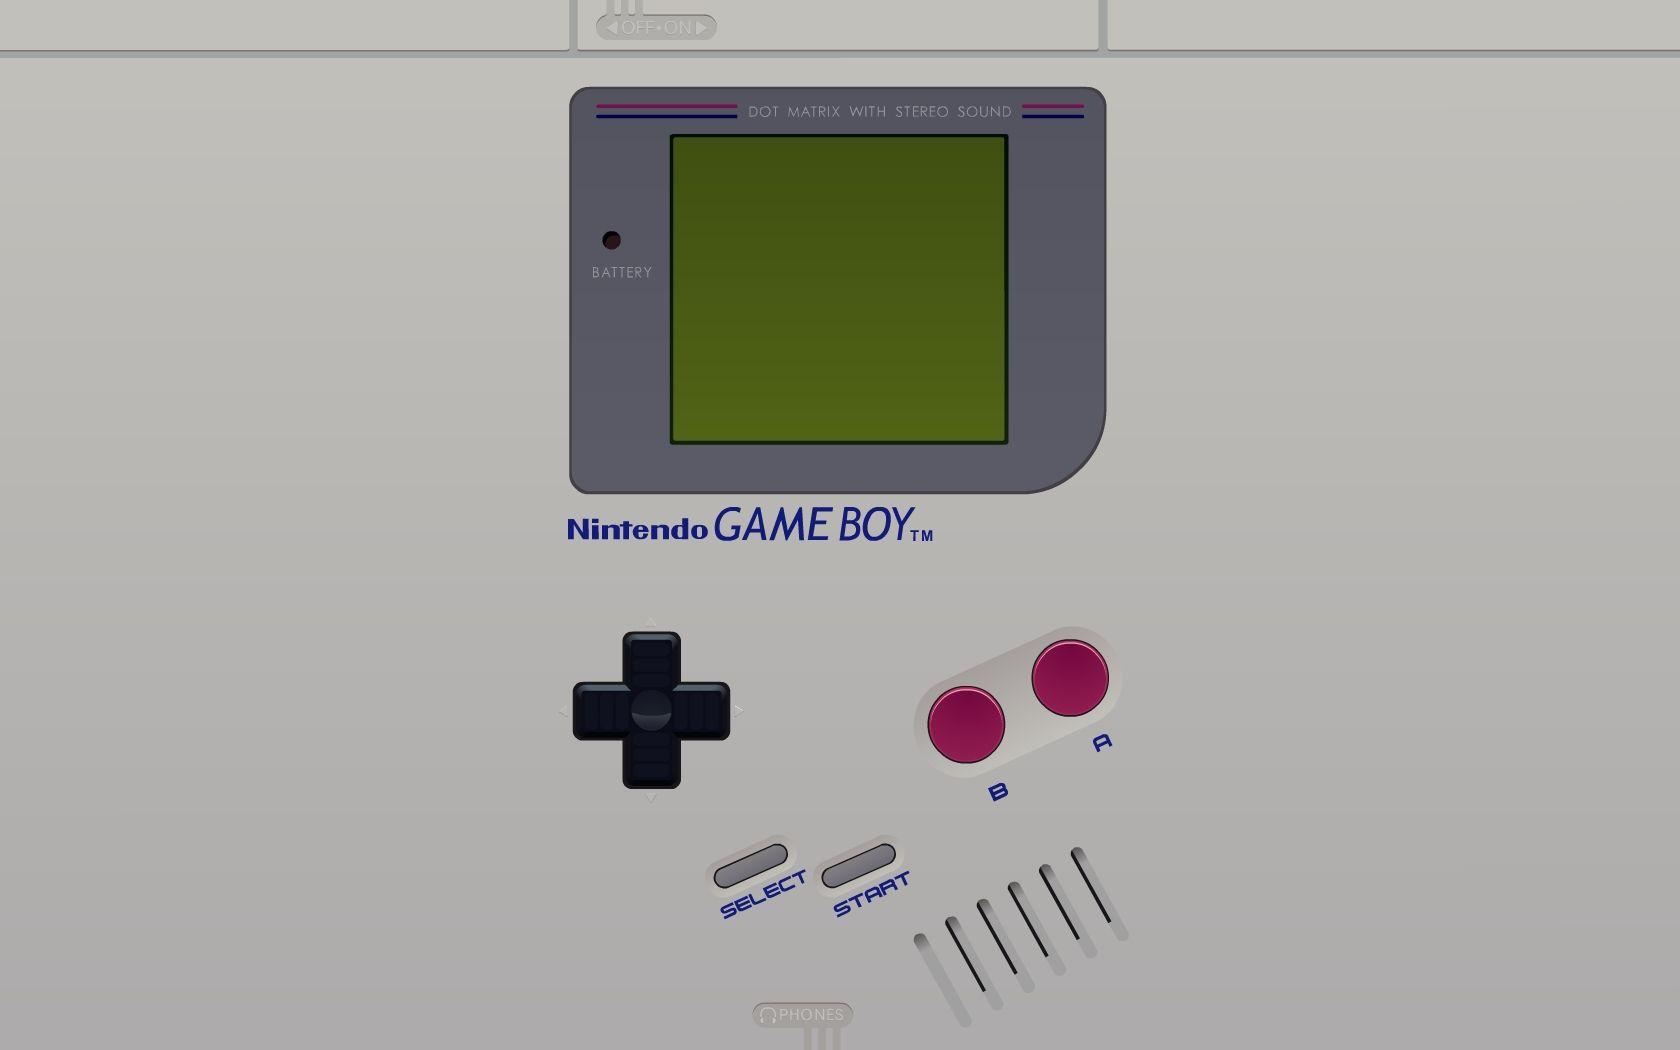 Gameboy Classic hình nền sẽ khiến bạn mất hồn với những hình ảnh quen thuộc đầy màu sắc và cổ điển. Hãy bước vào thế giới đầy nuối tiếc của tuổi thơ và khám phá kho tàng hình nền HD mà Gameboy Classic mang lại. Cùng xem hình ảnh liên quan để lựa chọn hình nền ưng ý nhất cho màn hình của mình nhé!